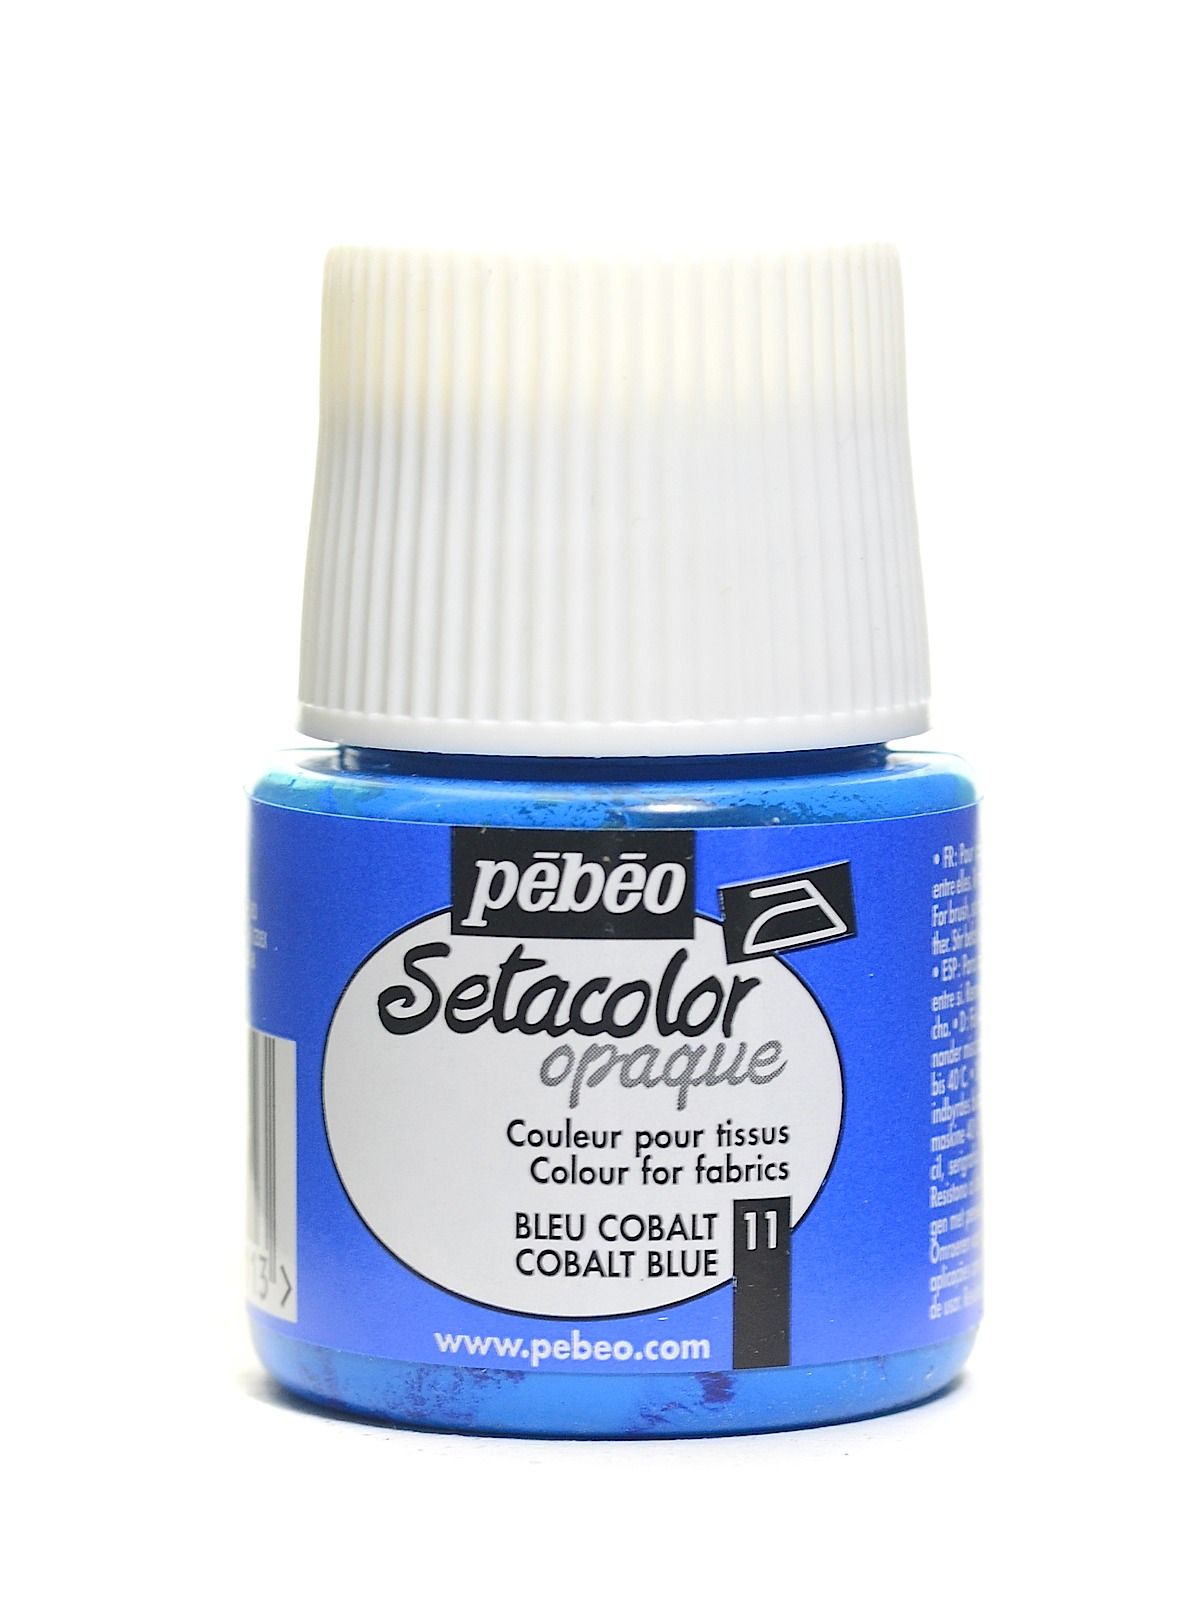 Pébéo Setacolor Fabric Paint - Opaque Cobalt Blue - 45 mL Bottle